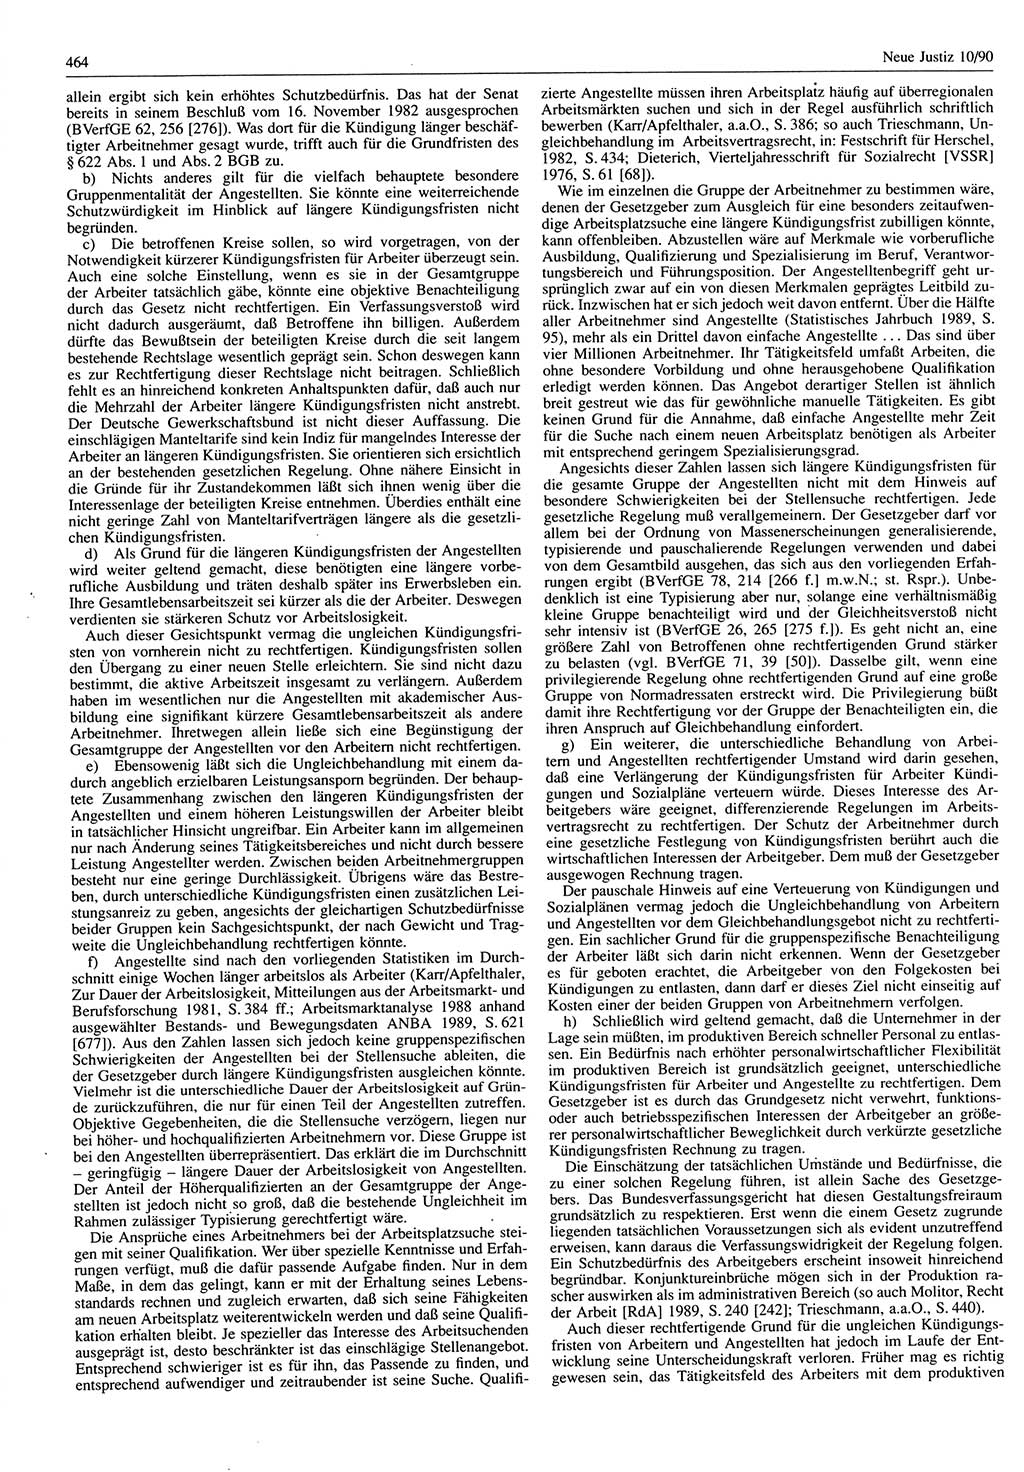 Neue Justiz (NJ), Zeitschrift für Rechtsetzung und Rechtsanwendung [Deutsche Demokratische Republik (DDR)], 44. Jahrgang 1990, Seite 464 (NJ DDR 1990, S. 464)